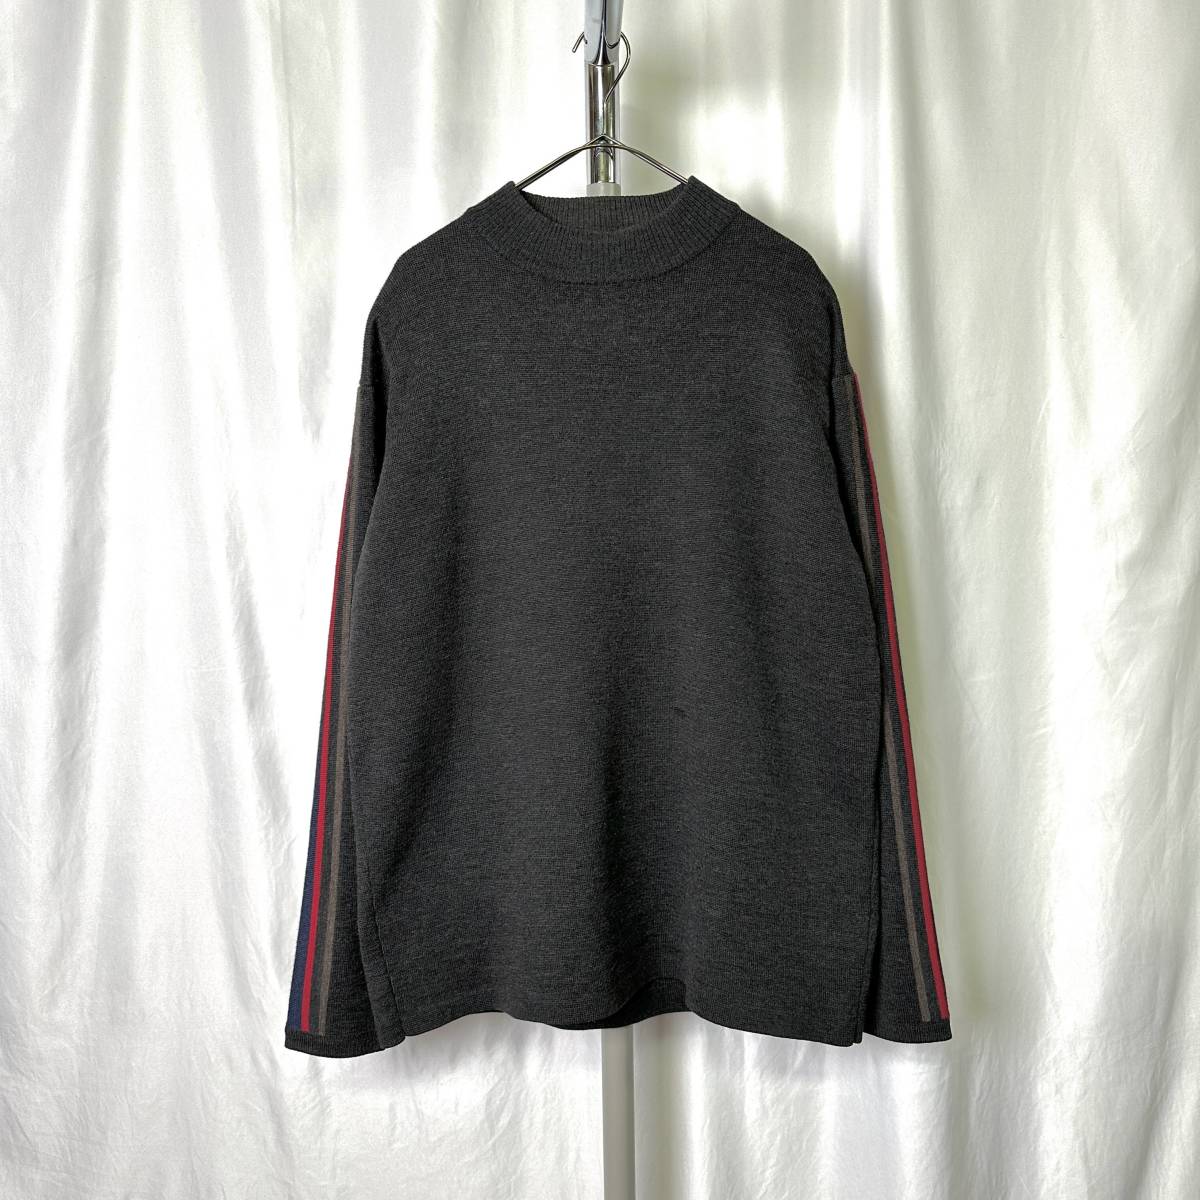 90s Hong Kong производства arm линия mok шея штраф melino шерсть свитер XL темно-серый лыжи вязаный 80s 00s Old Vintage 